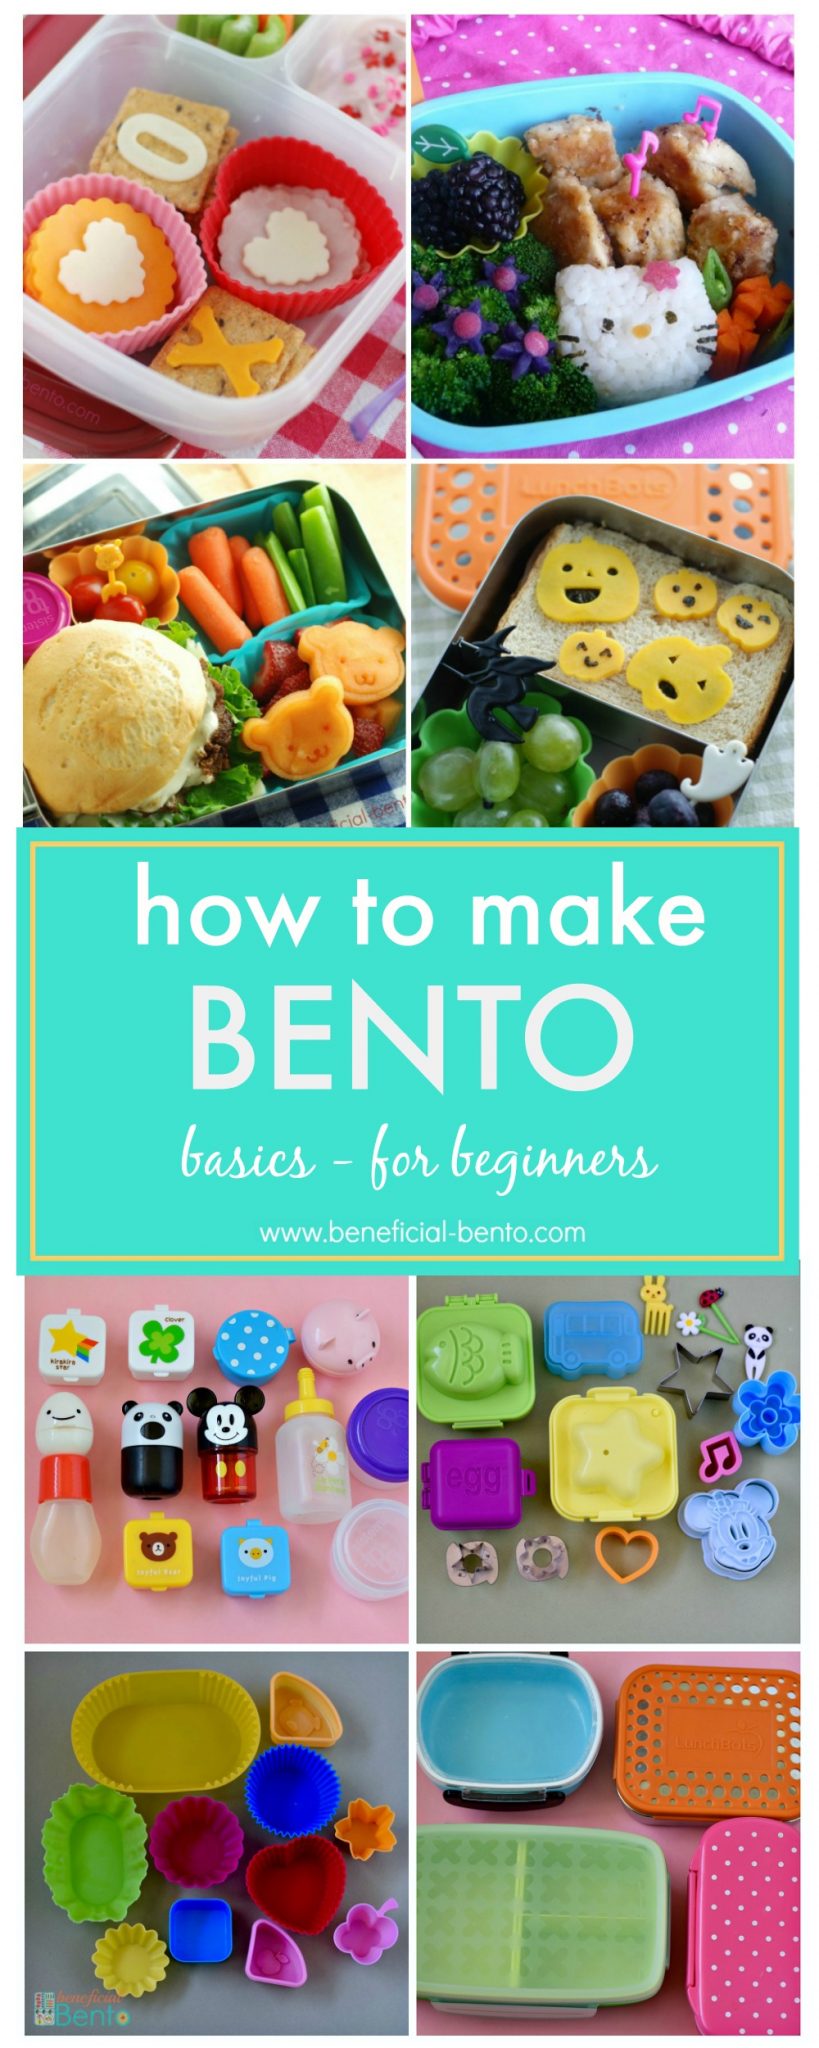 https://static.beneficial-bento.com/uploads/2017/07/How-to-Make-Bento-PIN1.jpg